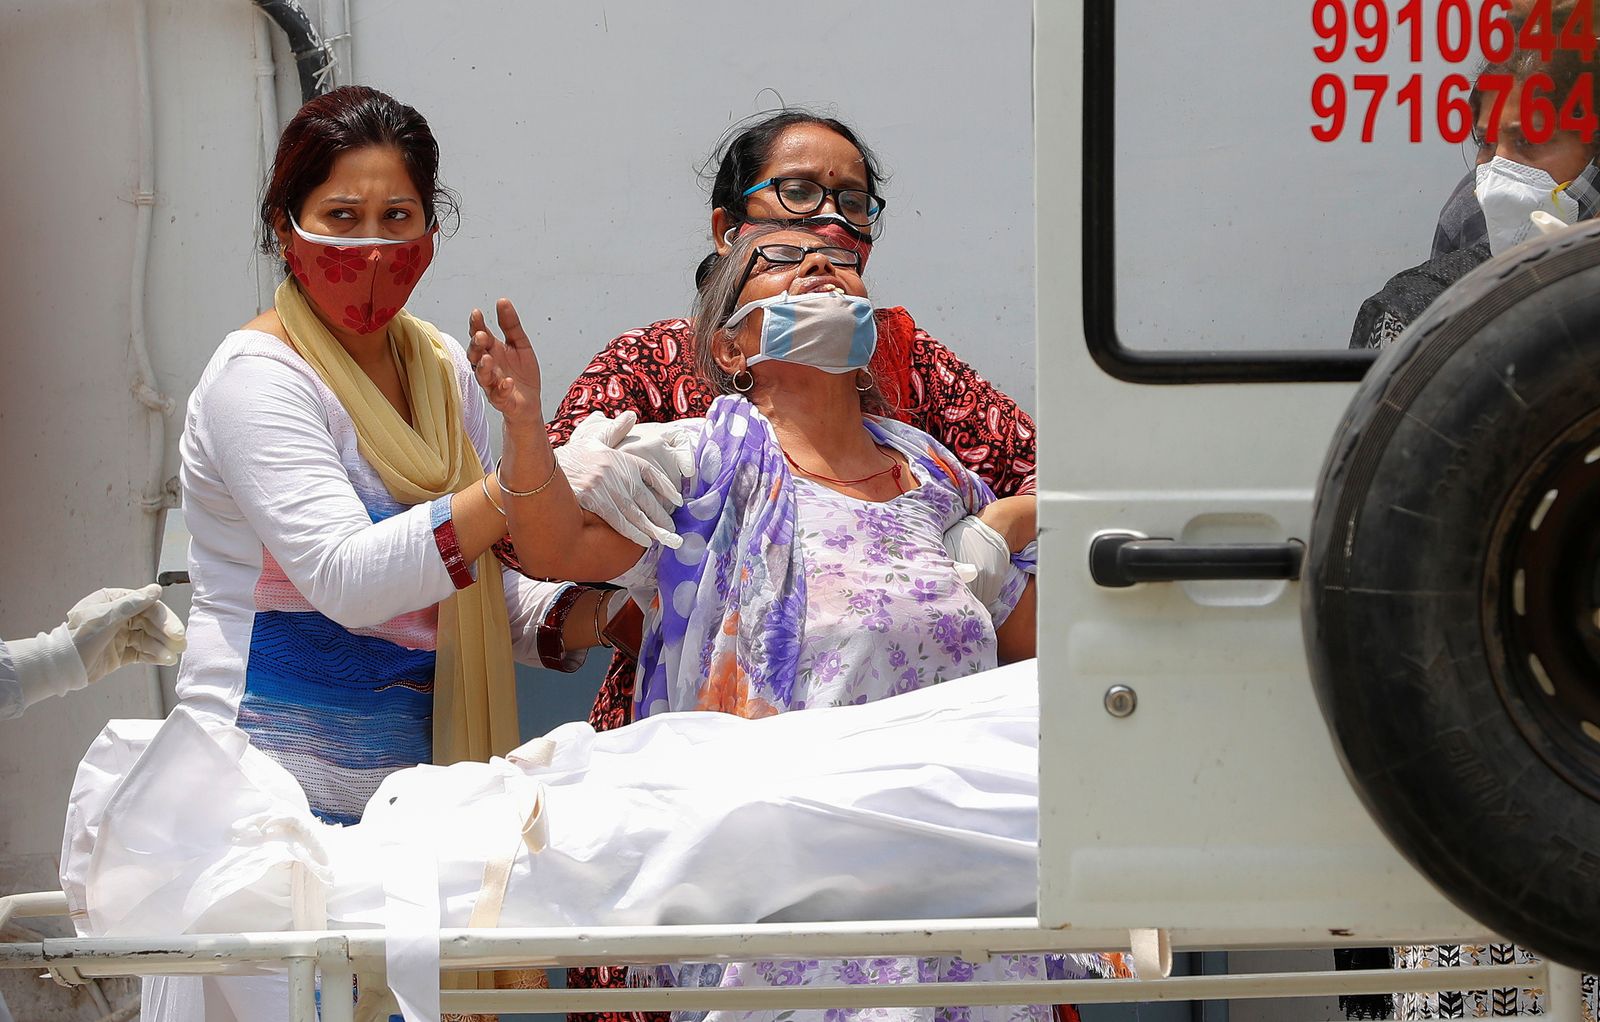 امرأة حزينة بعد رؤية جثة ابنها الذي توفي بسبب كورونا- نيودلهي - REUTERS